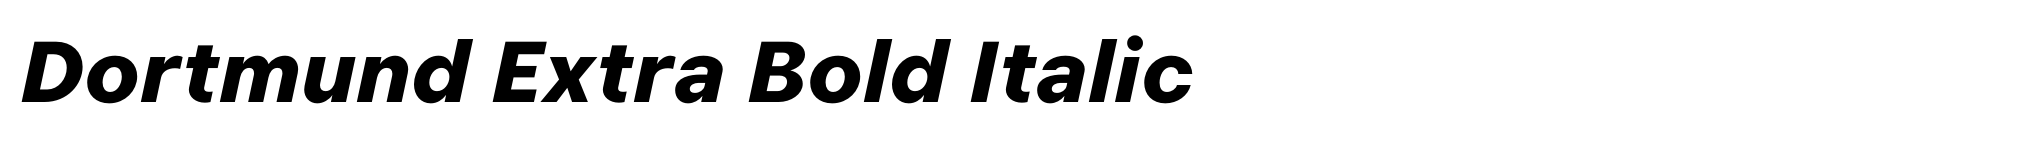 Dortmund Extra Bold Italic image